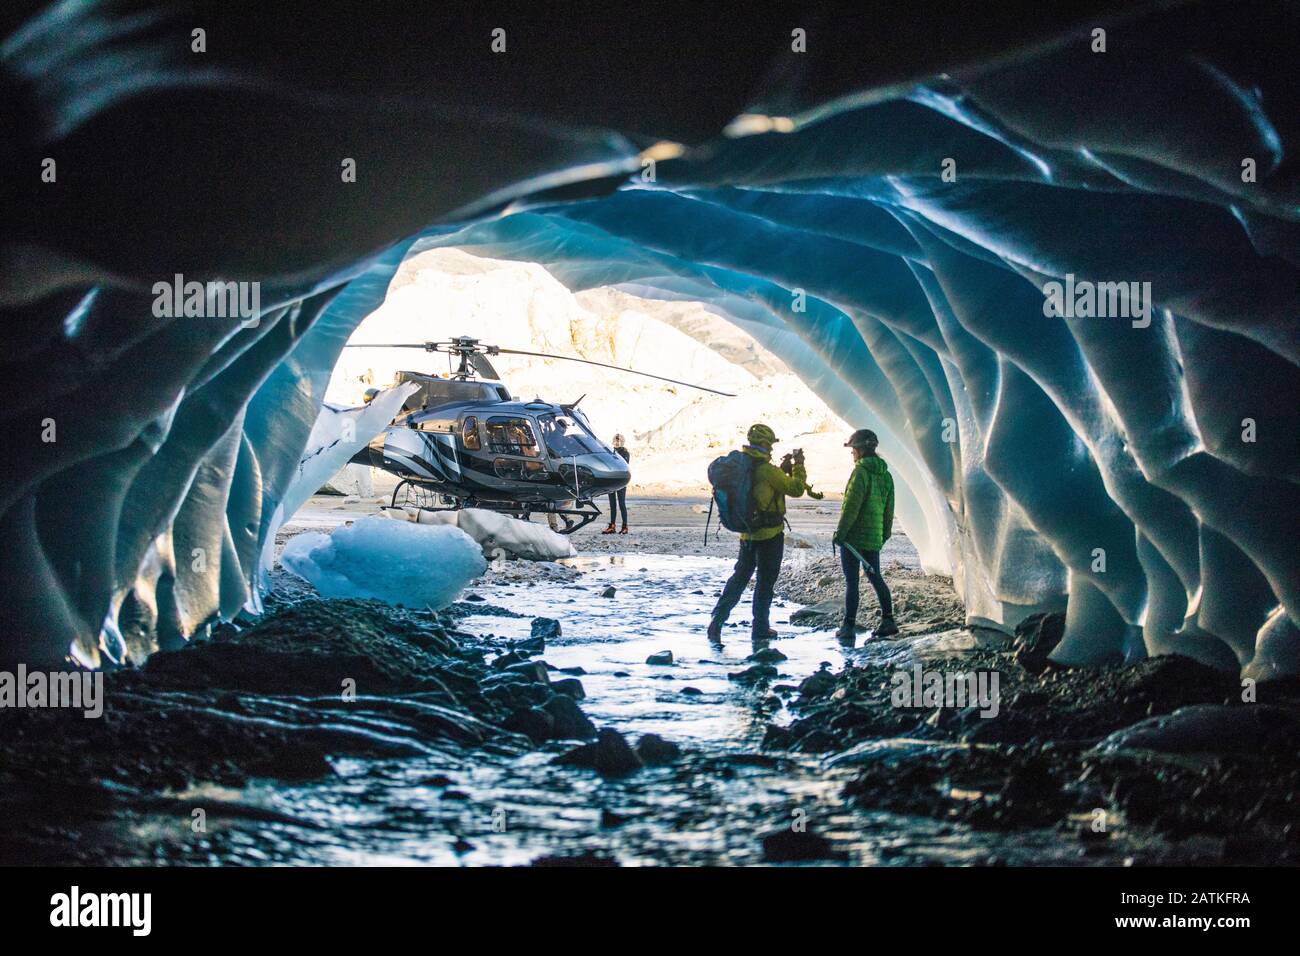 Homme photographiant partenaire dans une grotte de glace pendant le vol en hélicoptère. Banque D'Images